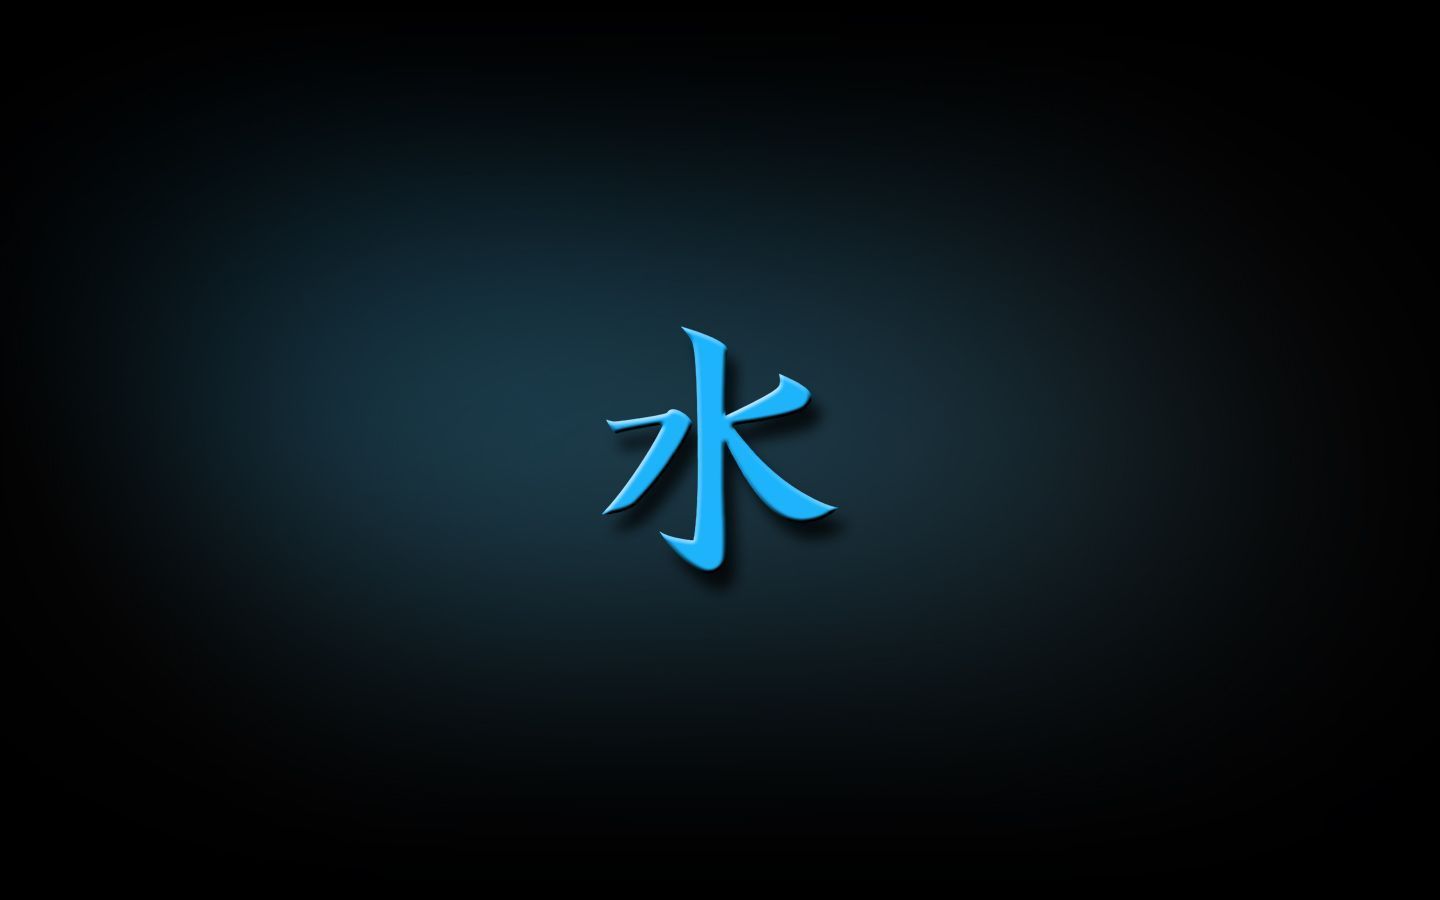 Water Kanji by klex-ur on DeviantArt